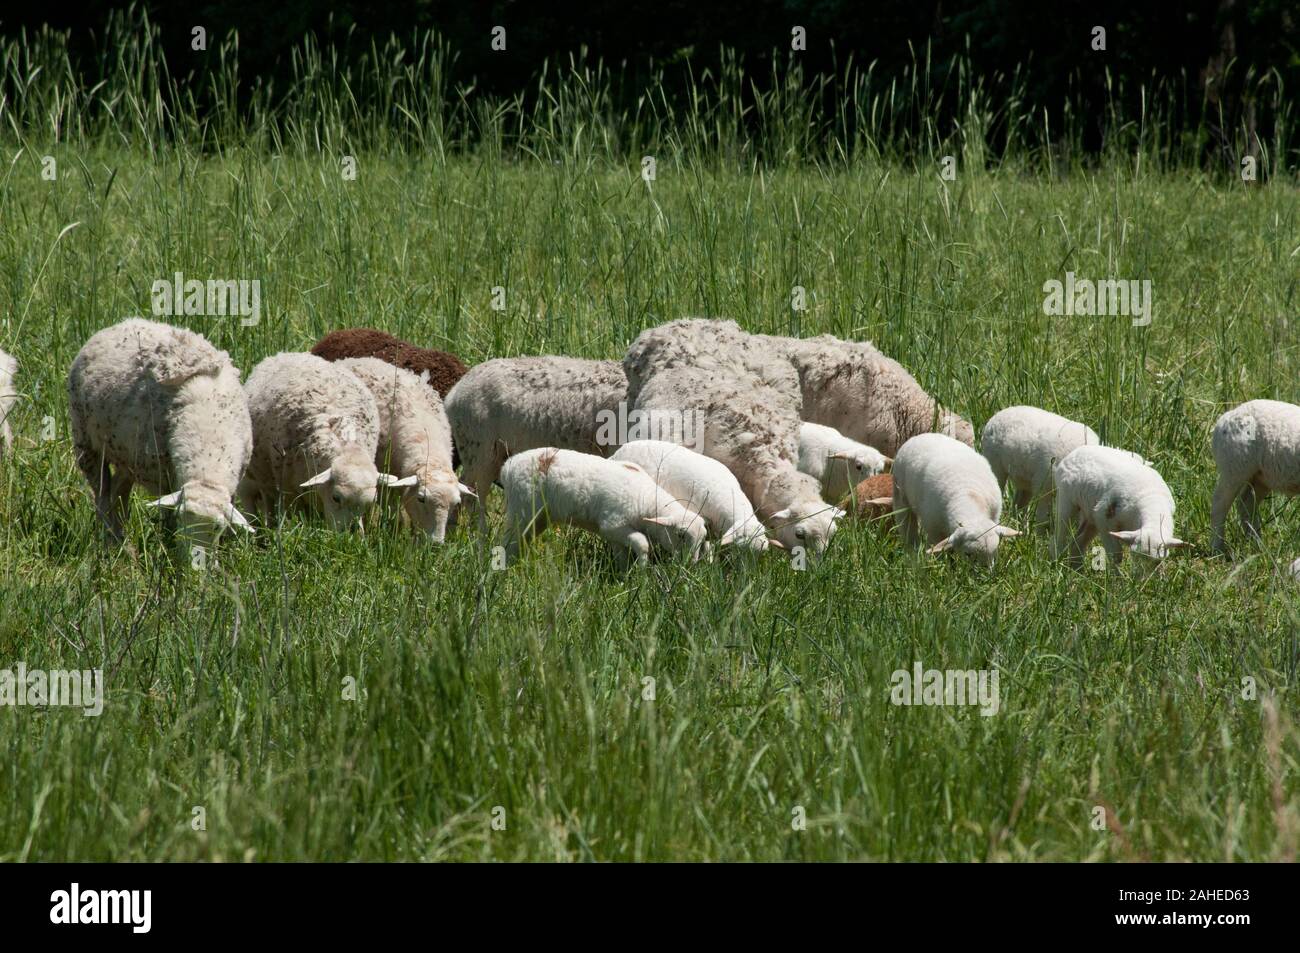 Moutons hybrides peuvent survivre uniquement sur l'herbe à l'Tuckahoe Plantation, dans la région de Richmond, en Virginie le 5 mai 2011. Une clôture électrifiée garder dans le bon troupeau des pâturages où ils se nourrissent de l'herbe et laisser l'engrais riche en éléments nutritifs pour revitaliser le sol, l'amélioration de la repousse. La plantation a été la maison d'enfance du président Thomas Jefferson de 1745 jusqu'en 1752, aujourd'hui, c'est une ferme avec du bétail, des moutons, des poulets et des lapins qui fournit la viande pour ligne de chute de fermes d'un moyeu de l'alimentation locale. Ligne de chute de fermes offre une grande variété d'aliments de base et des articles spécialisés sur un inventaire des fruits Banque D'Images